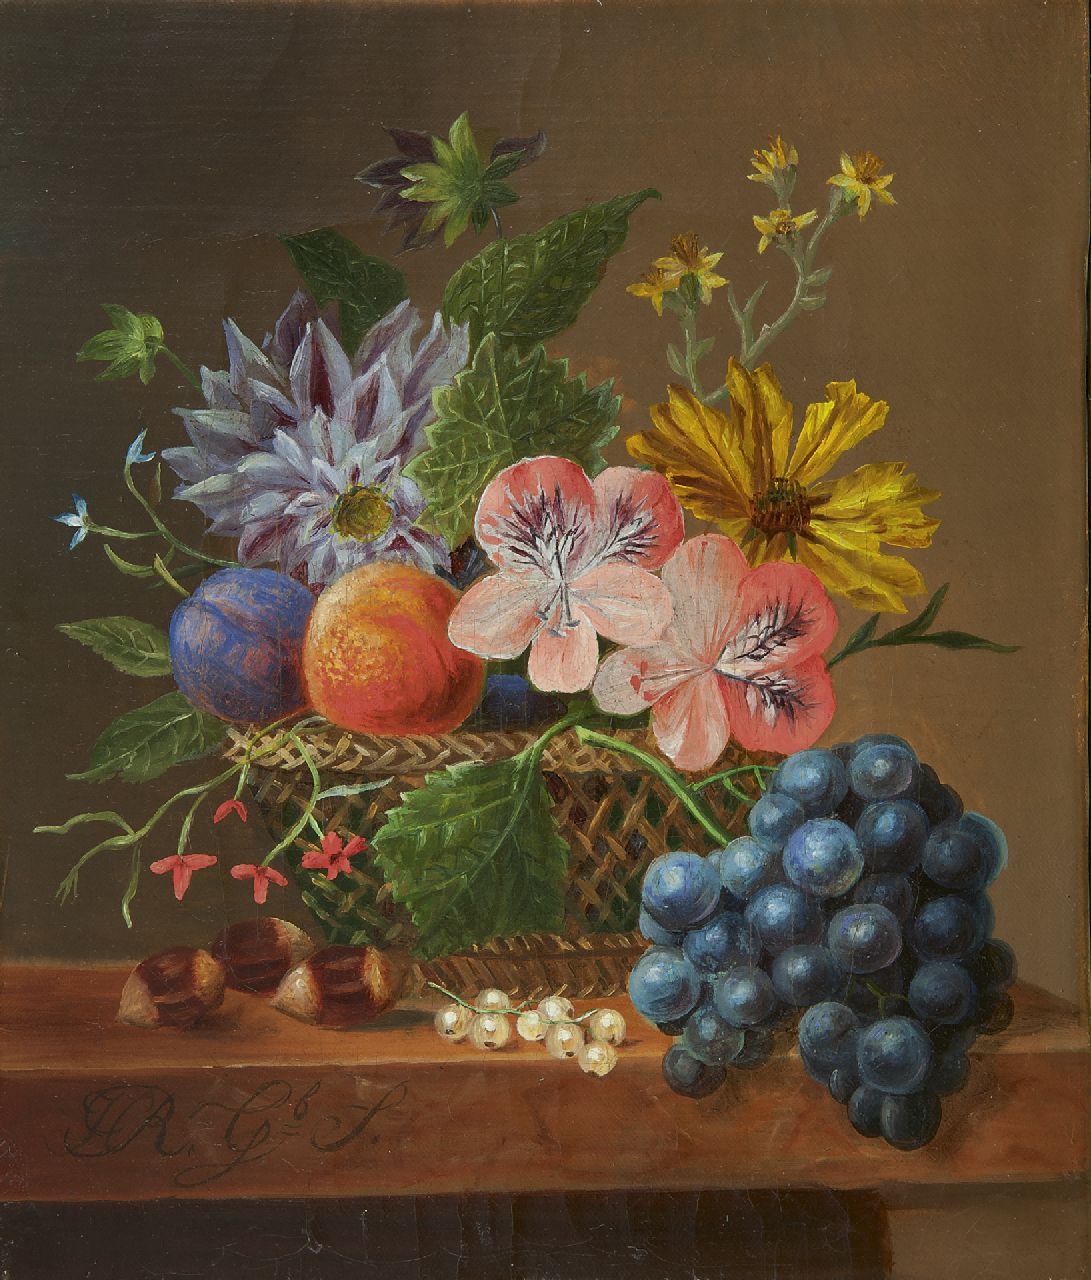 Onbekend   | Onbekend | Schilderijen te koop aangeboden | Stilleven met bloemen en fruit in een mand, olieverf op doek 21,5 x 18,0 cm, gesigneerd linksonder 'H R. geboren S.